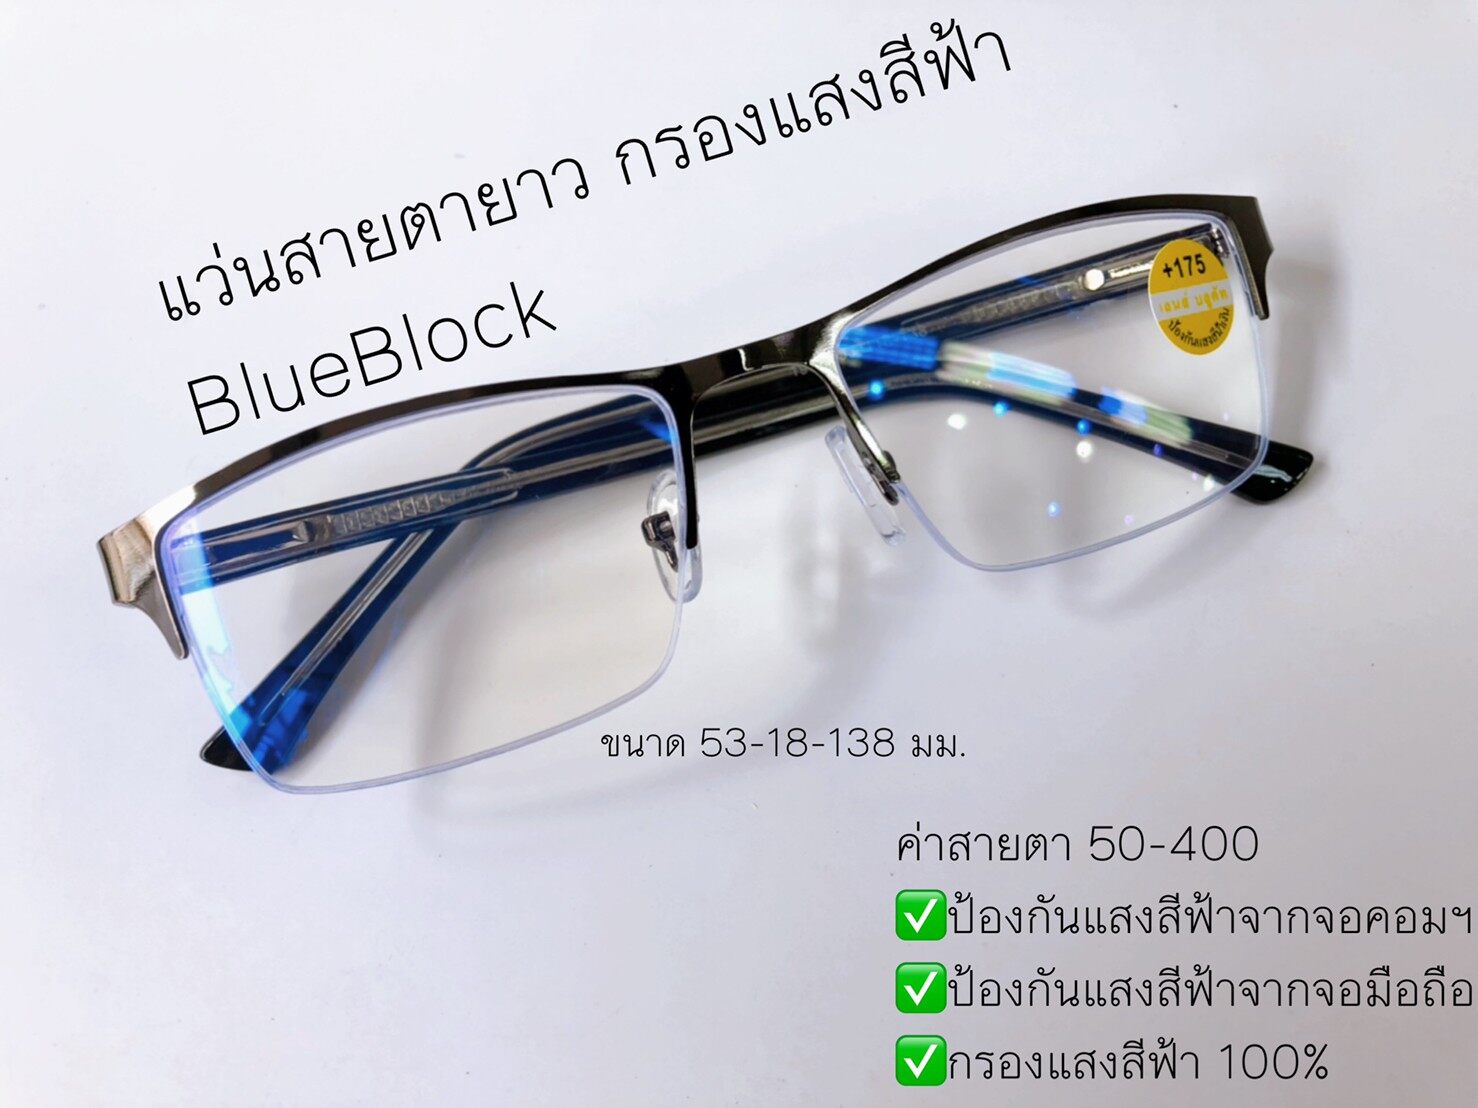 แว่นสายตายาว Blue Block กรองแสงสีฟ้า ขาสปริง จอมือถือ จอคอม แว่นตา แว่น แว่นสายตา สายตายาว